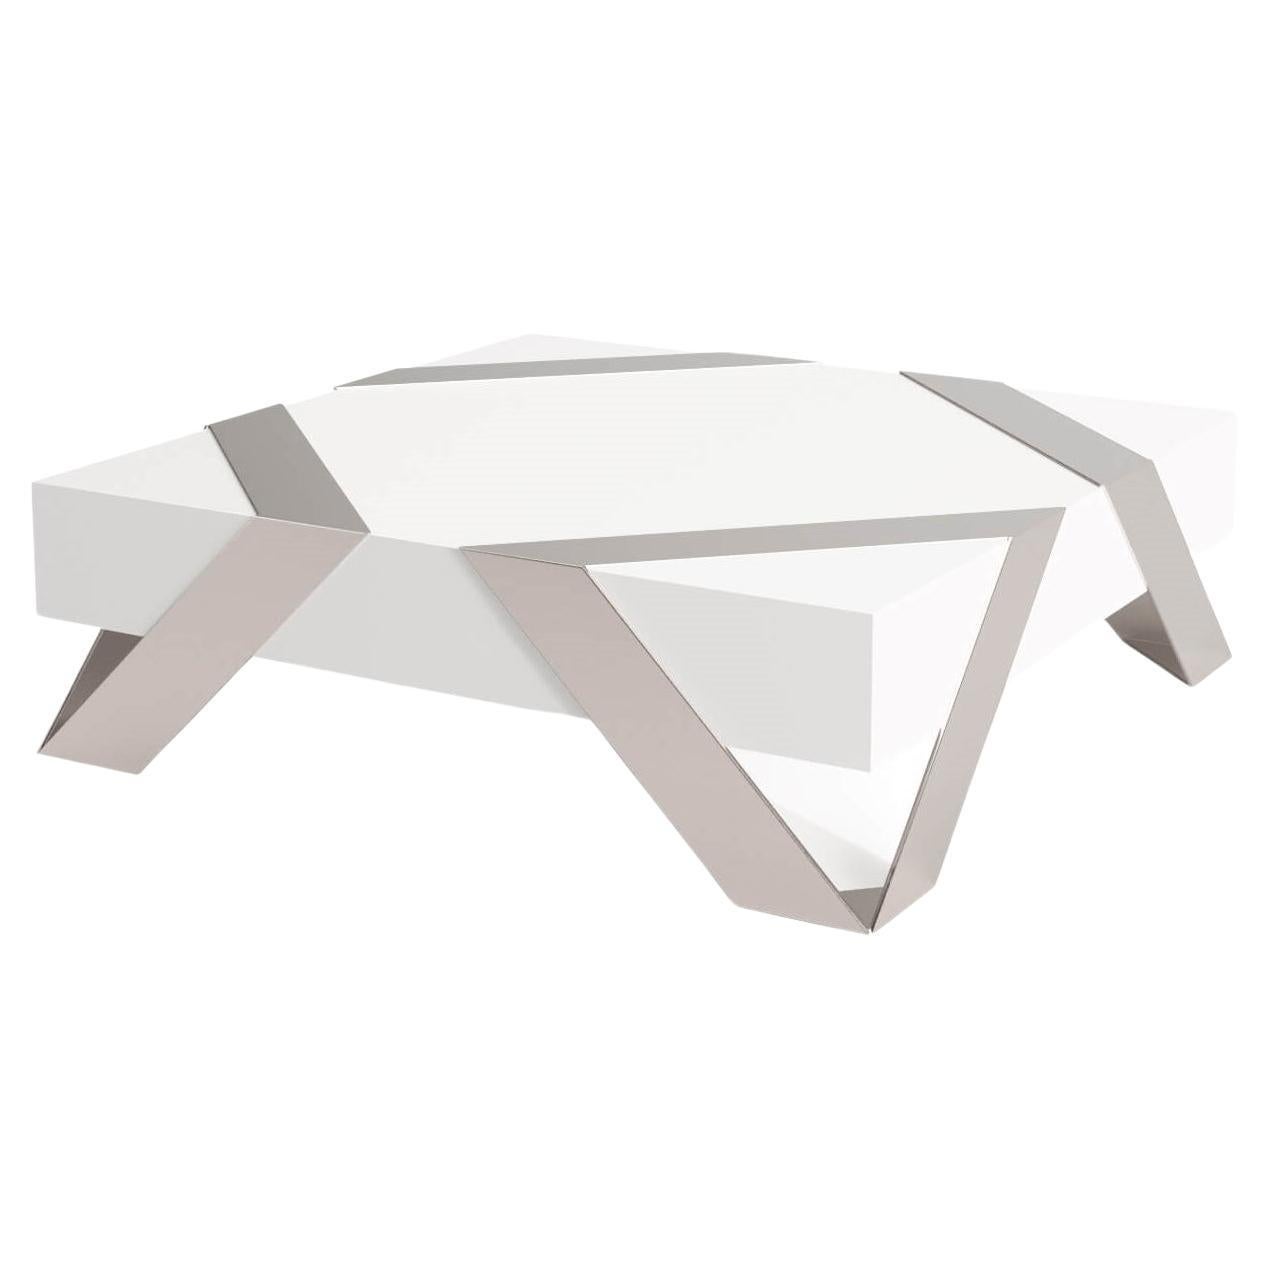 Table basse carrée moderne et minimaliste en acier inoxydable brossé blanc